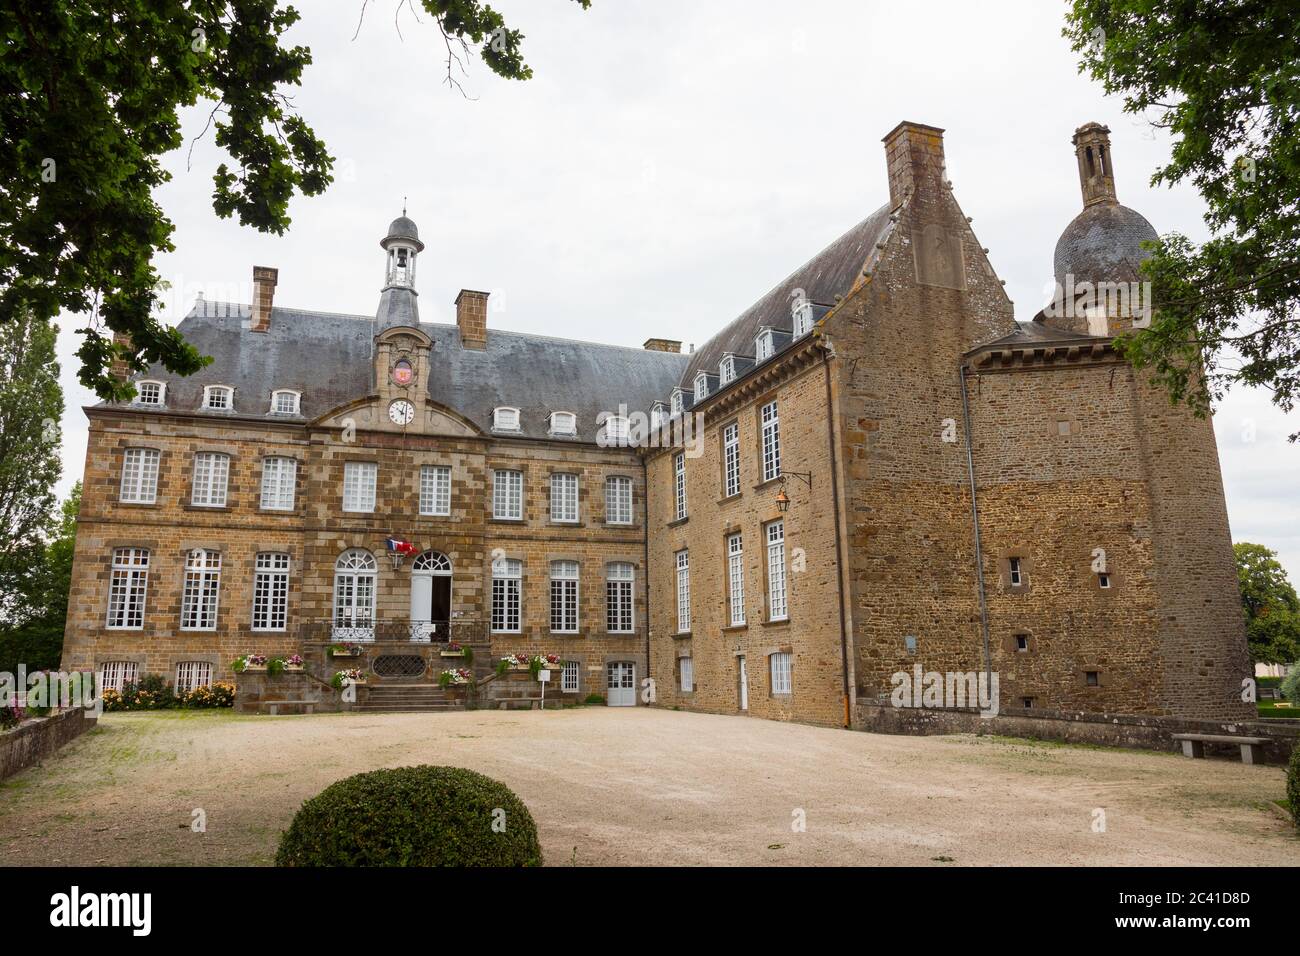 Das Schloss von Fler, heute ein Museum (Normandie, Orne, Frankreich). Wunderschöne mittelalterliche Architektur. Weitwinkelaufnahme dieses historischen Denkmals Stockfoto